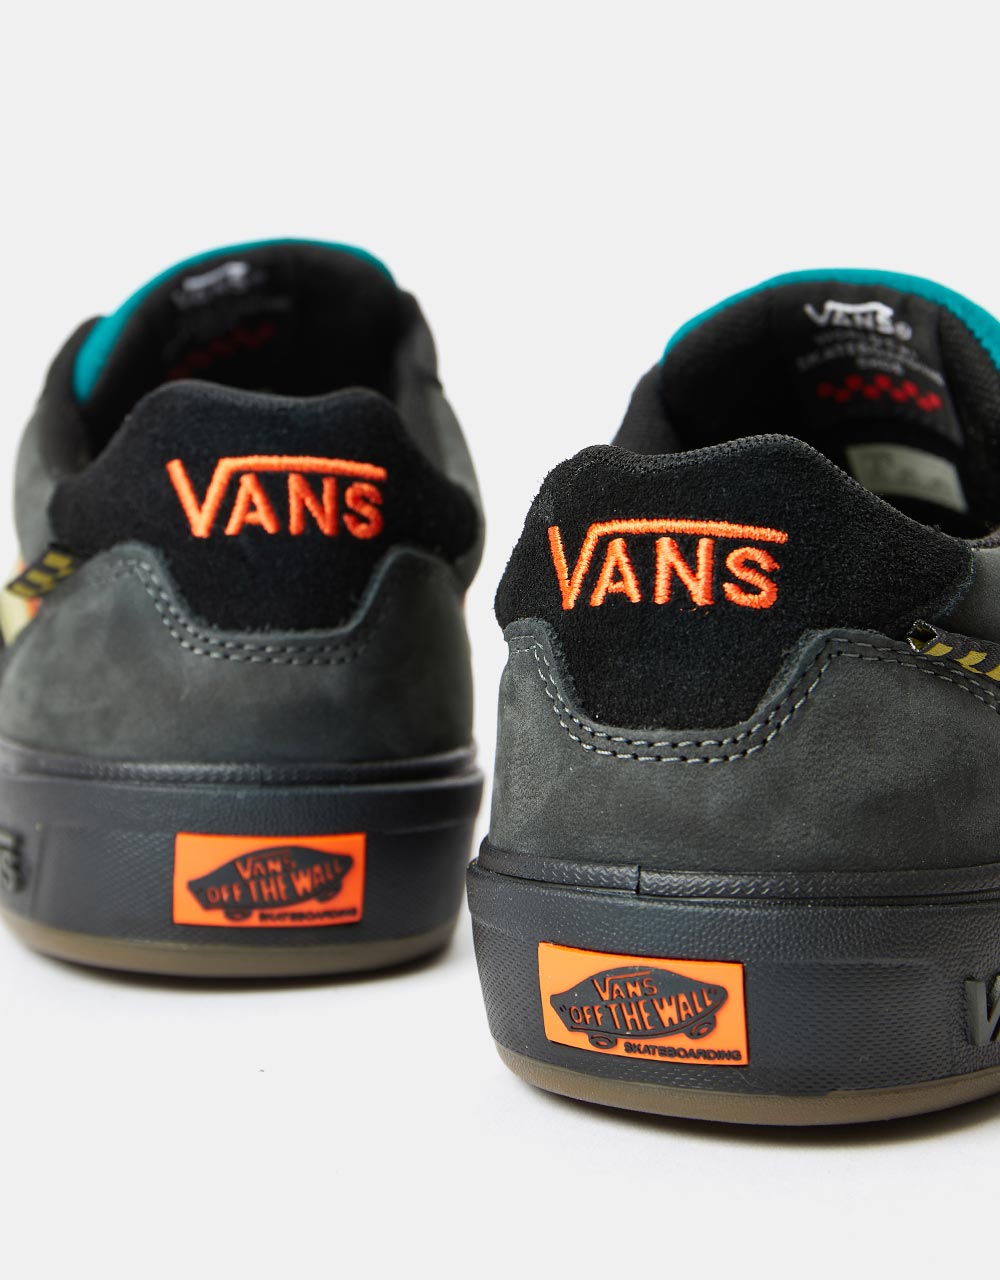 Vans Wayvee Skate Shoes - (Outdoor) Unexplored